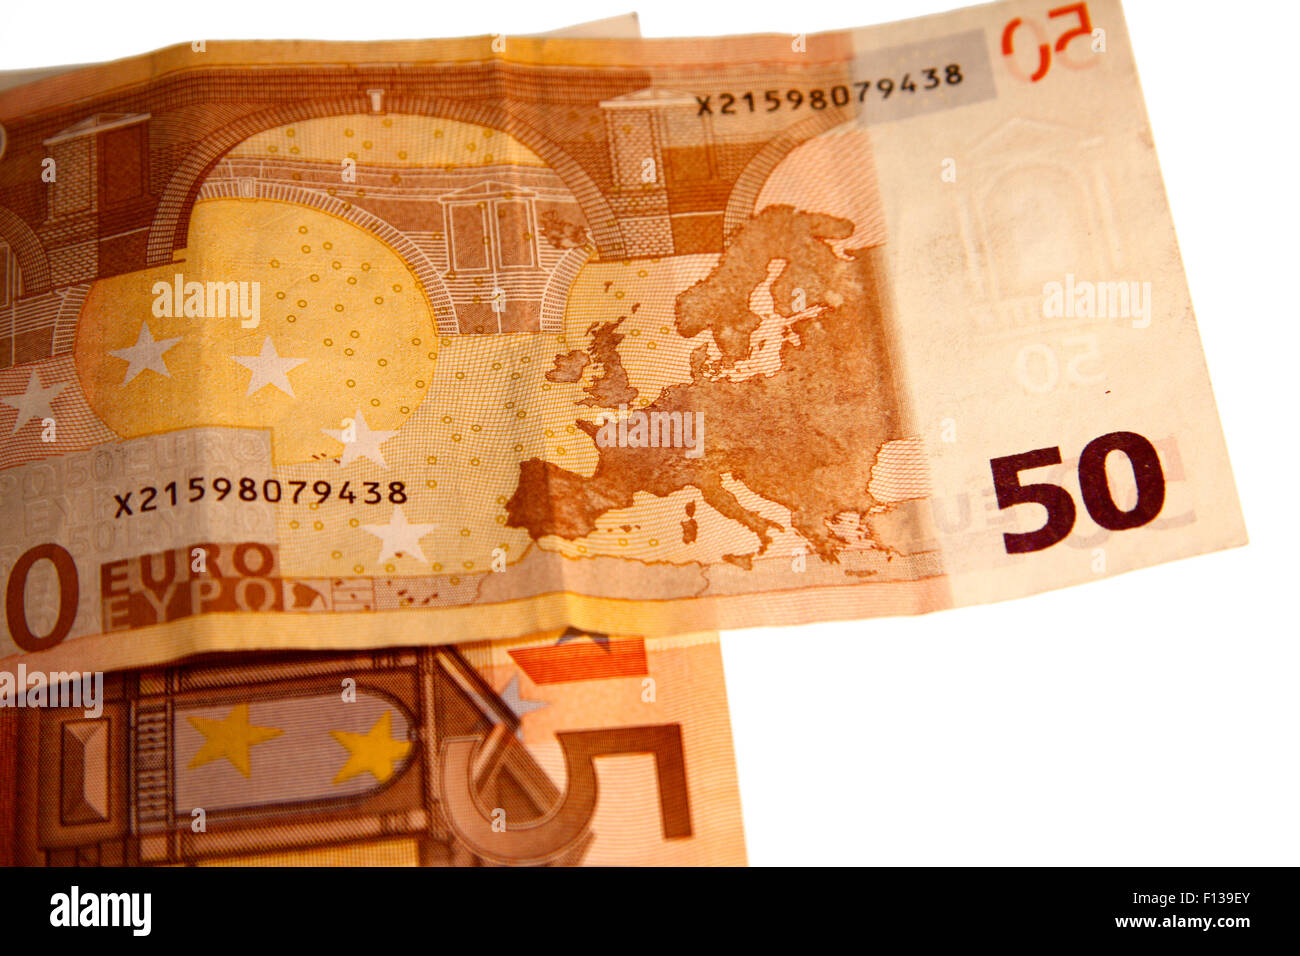 50 Euro-Scheine - Symbolbild Geld. Stock Photo